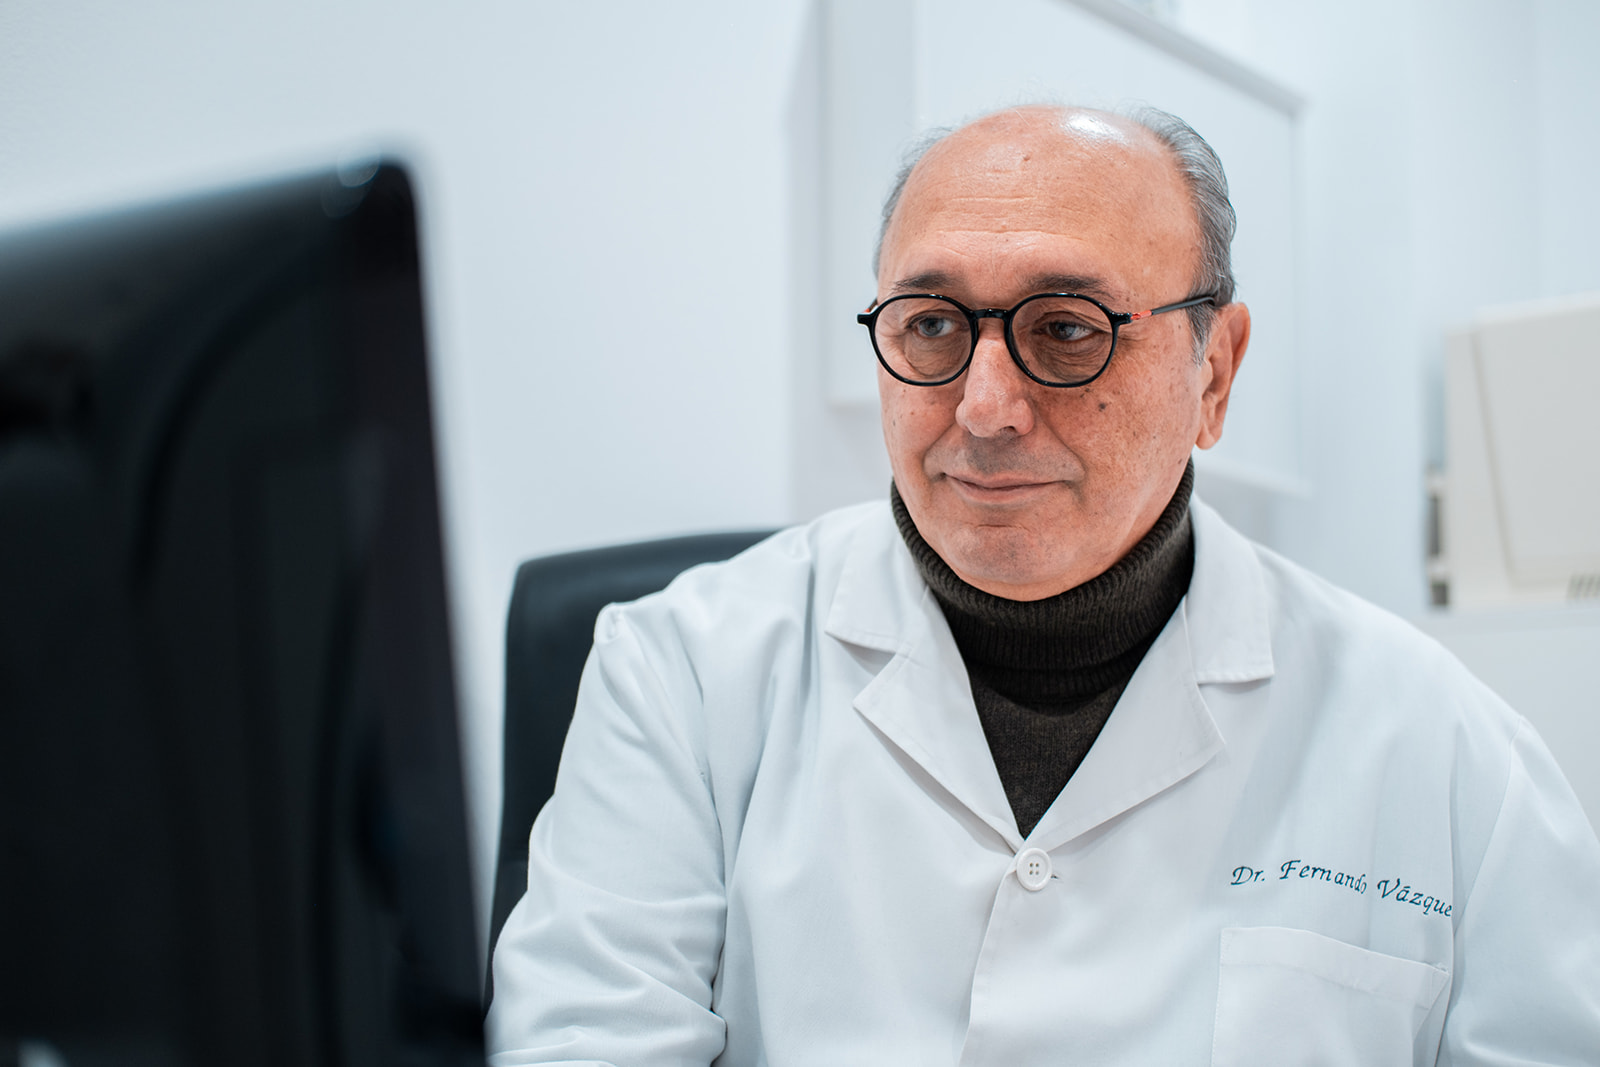 Doctor Fernando Vázquez - Ginecólogo de Clínica Villa de Prado